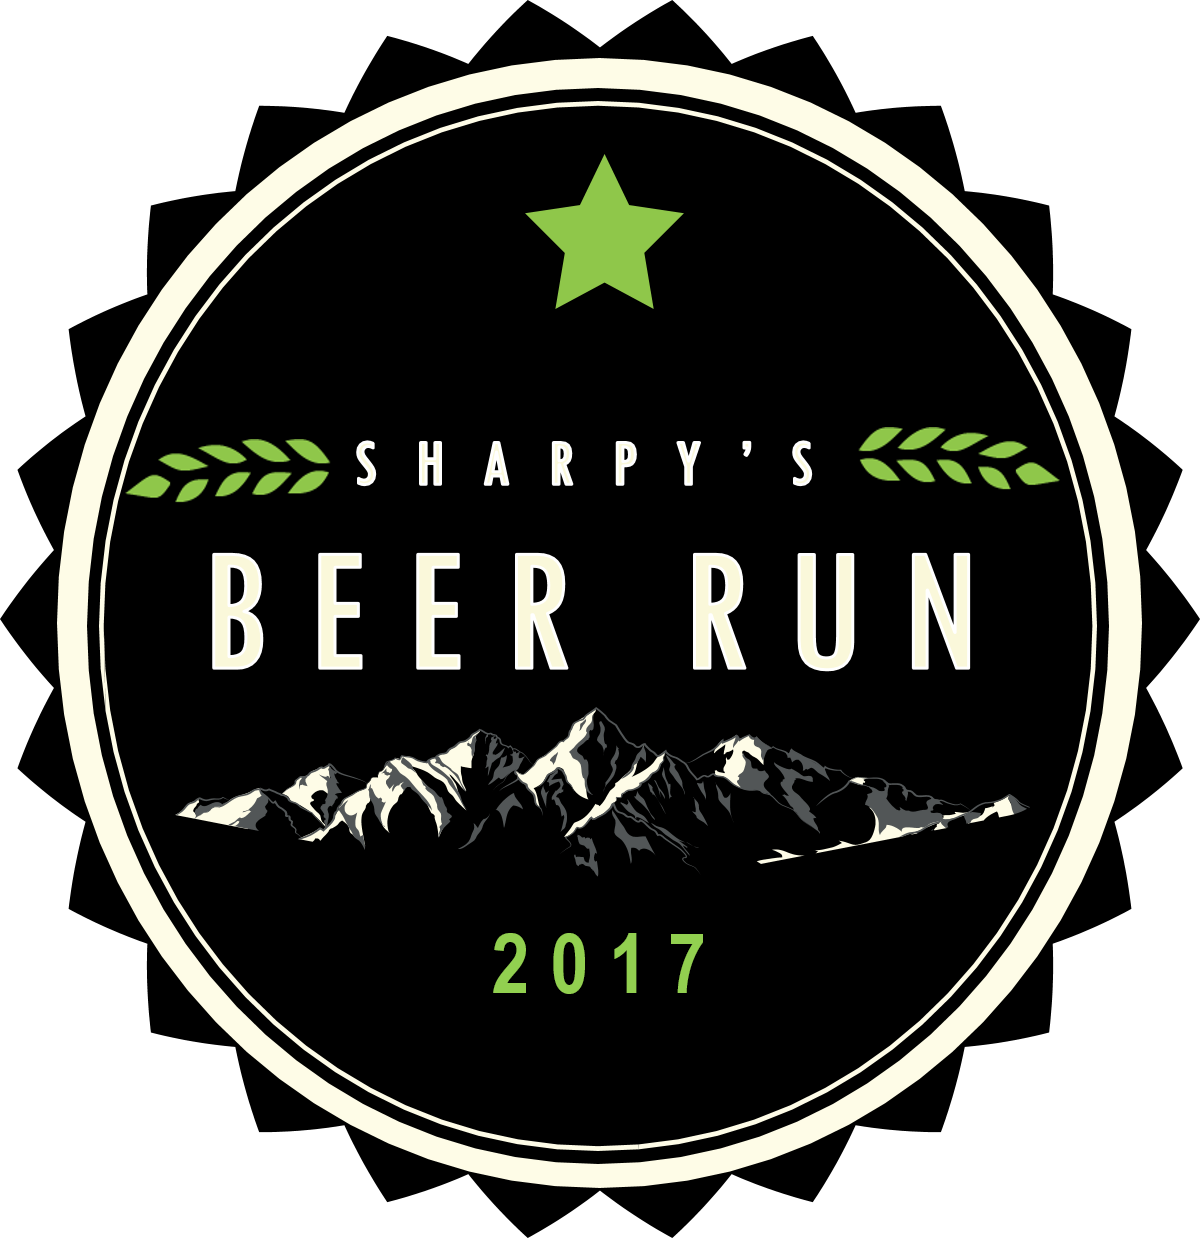 Sharpy's Beer Run